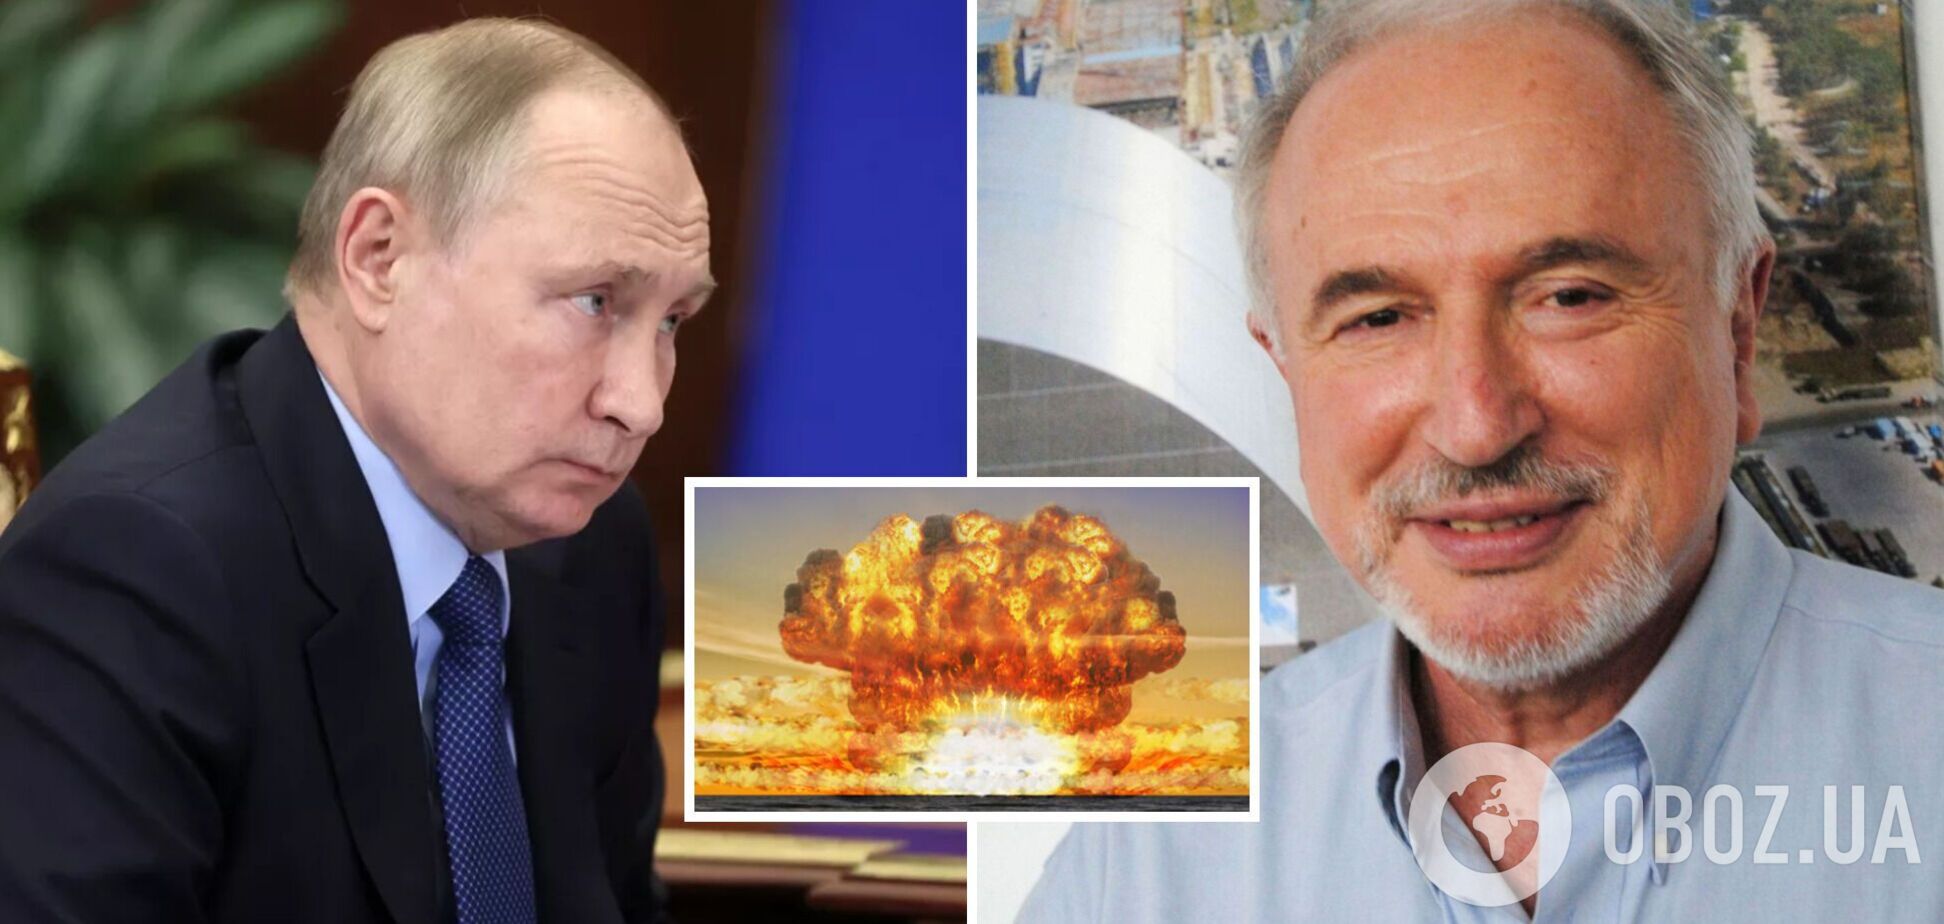 Усе, що робить Росія, – ядерний шантаж: Марк Железняк пояснив, для чого Путіну вкид про 'брудну бомбу'. Відео